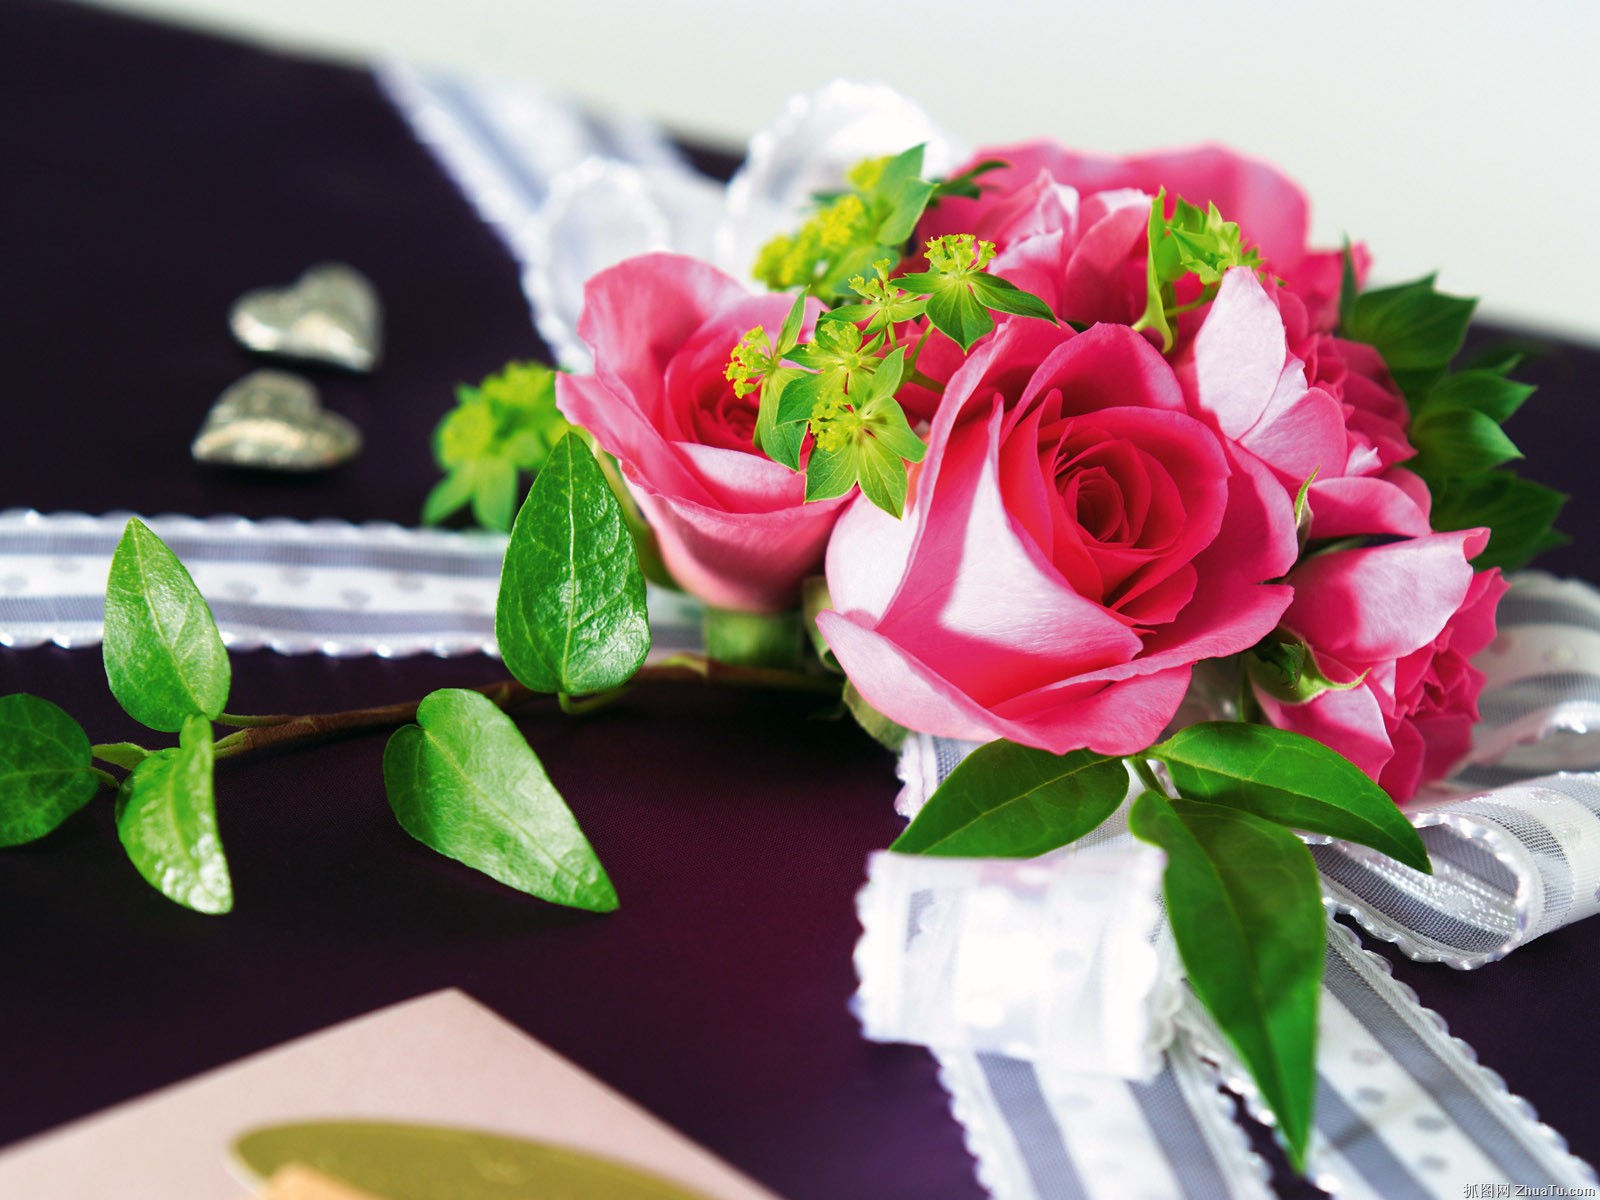 rose geschenk tapete,blume,rosa,gartenrosen,pflanze,floristik